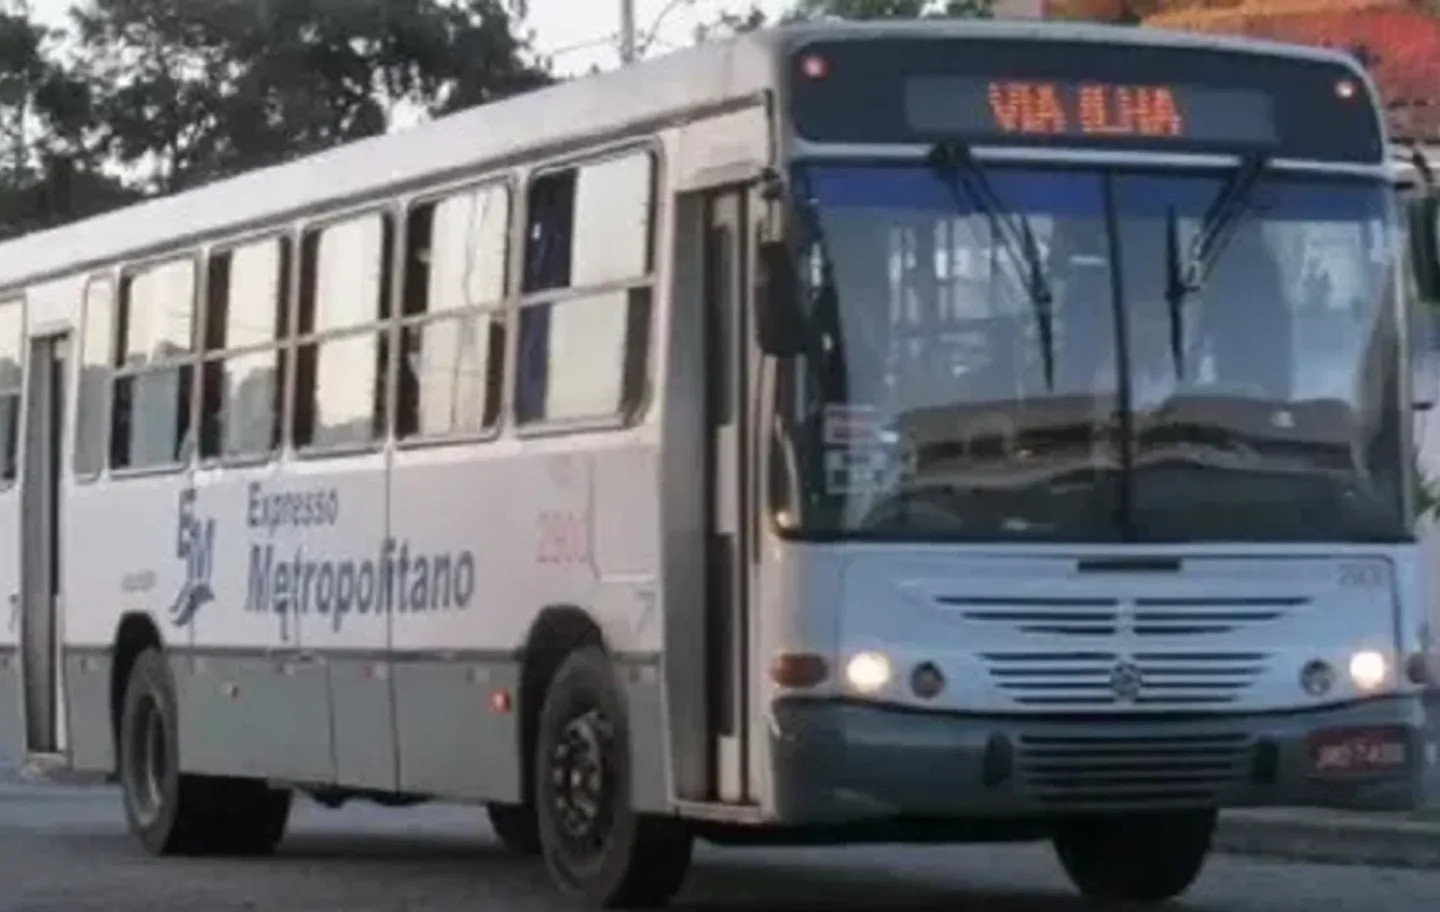 Ônibus do sistema metropolitano de Salvador